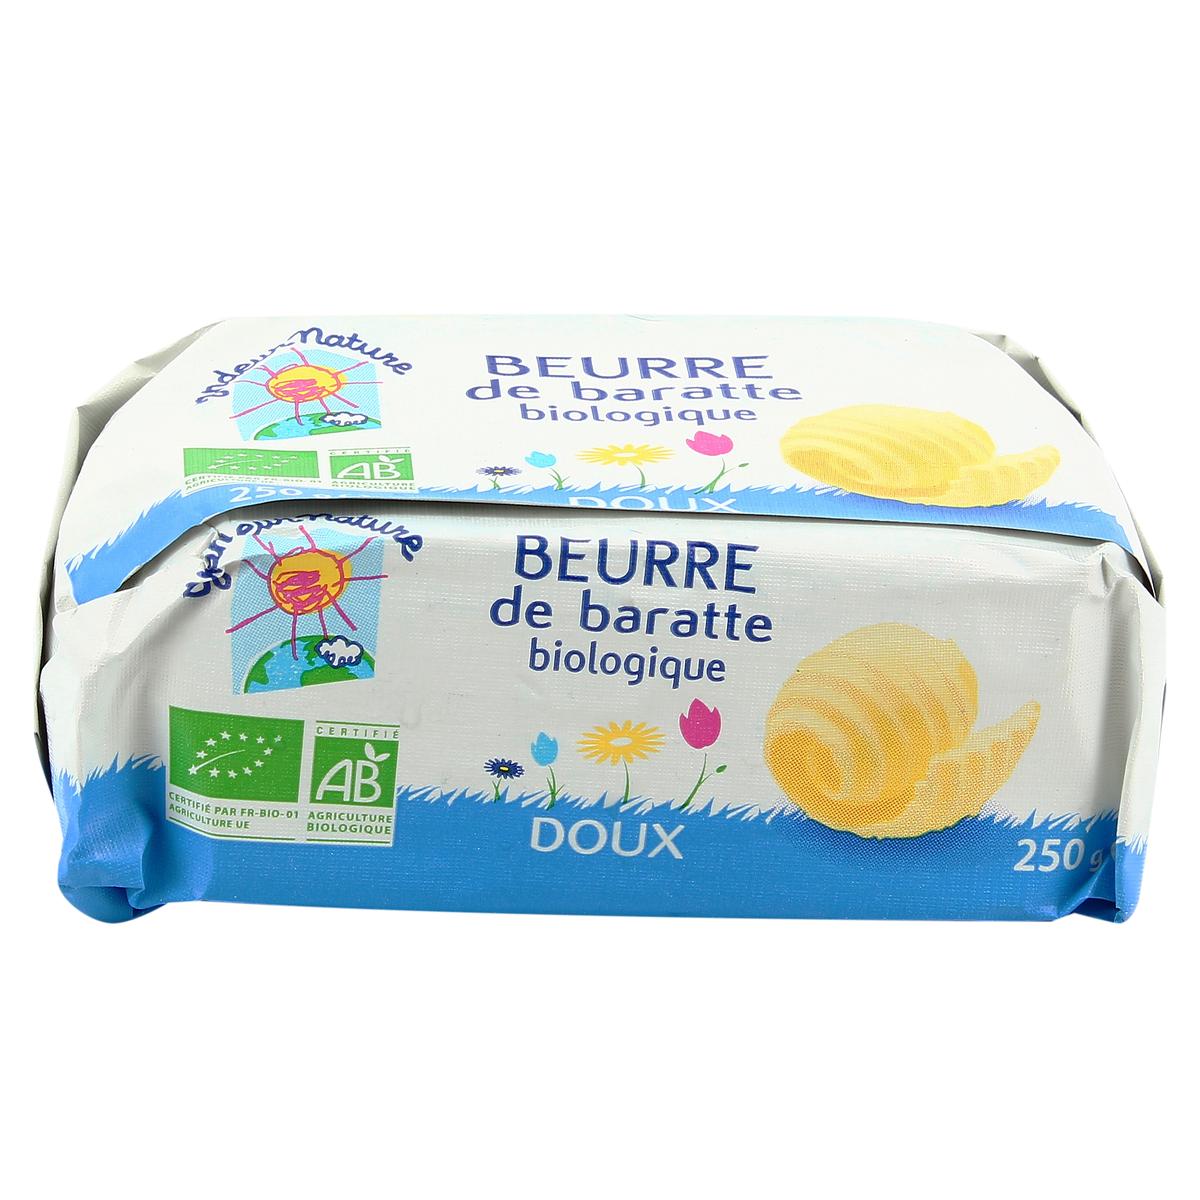 Le Beurre de baratte doux 250g BIO Le Gall - mon-marché.fr